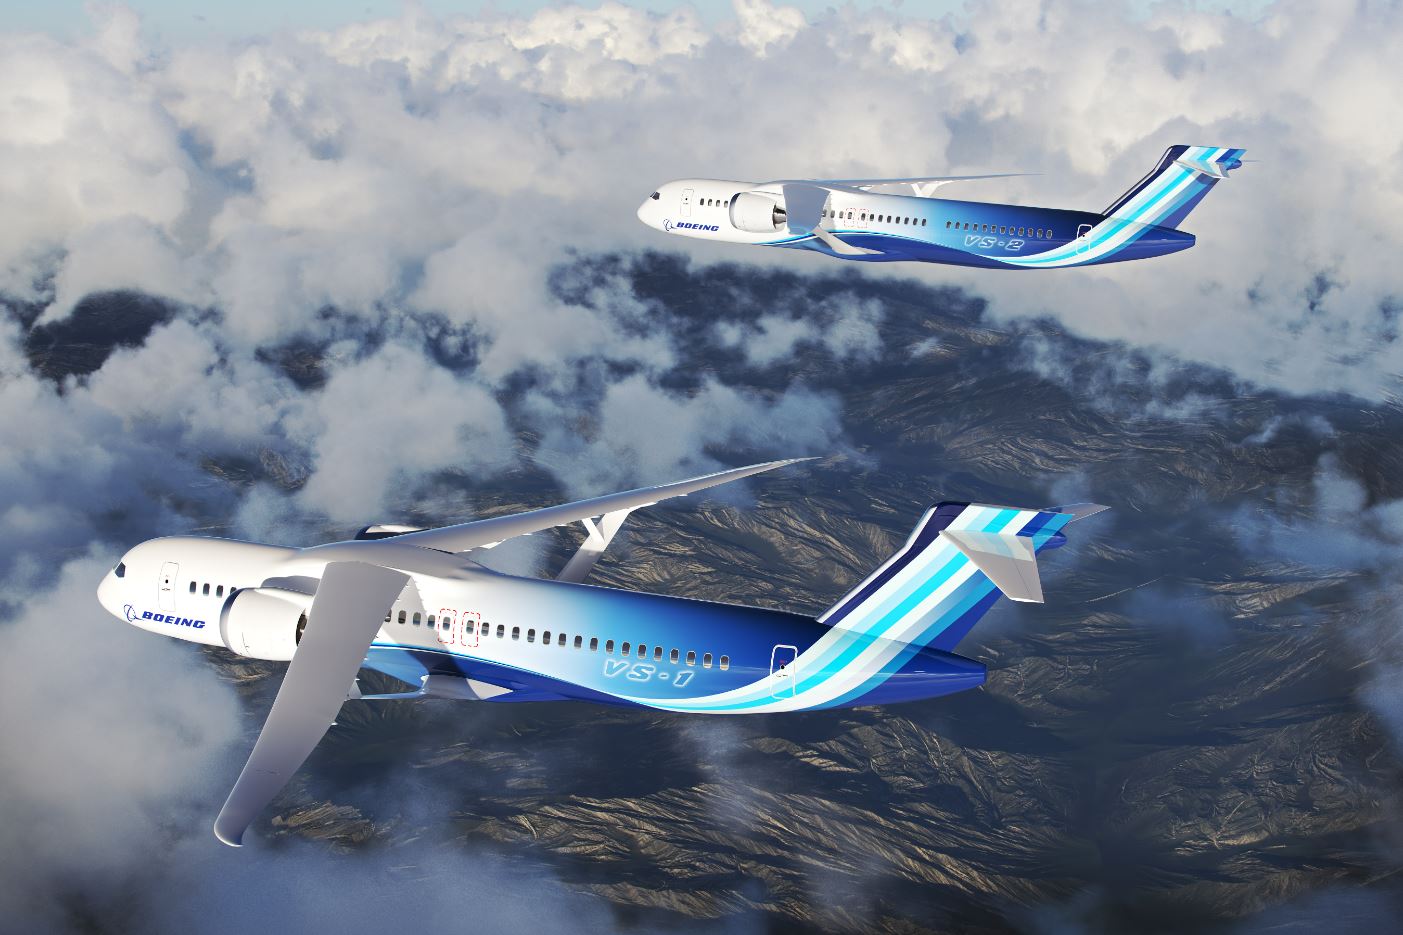 La NASA s'associe à Boeing pour développer un avion plus économique et plus écologique